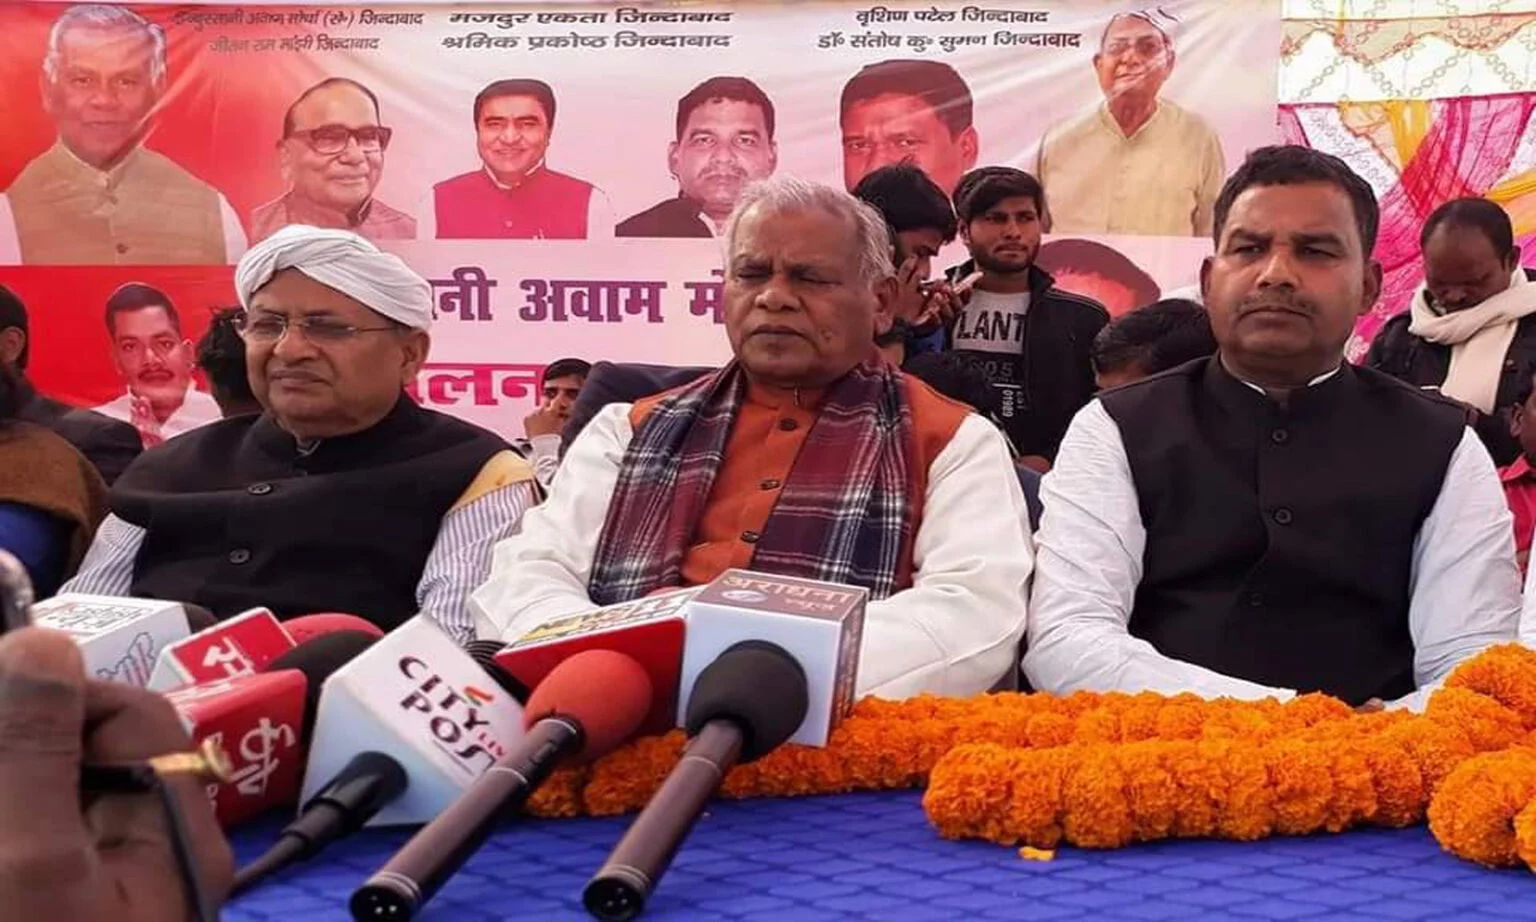 Bihar ki rajniti or rajneta राजनीति की ‘छोटी-छोटी दुकानों’ के फायदे 18 को एनडीए की बैठक